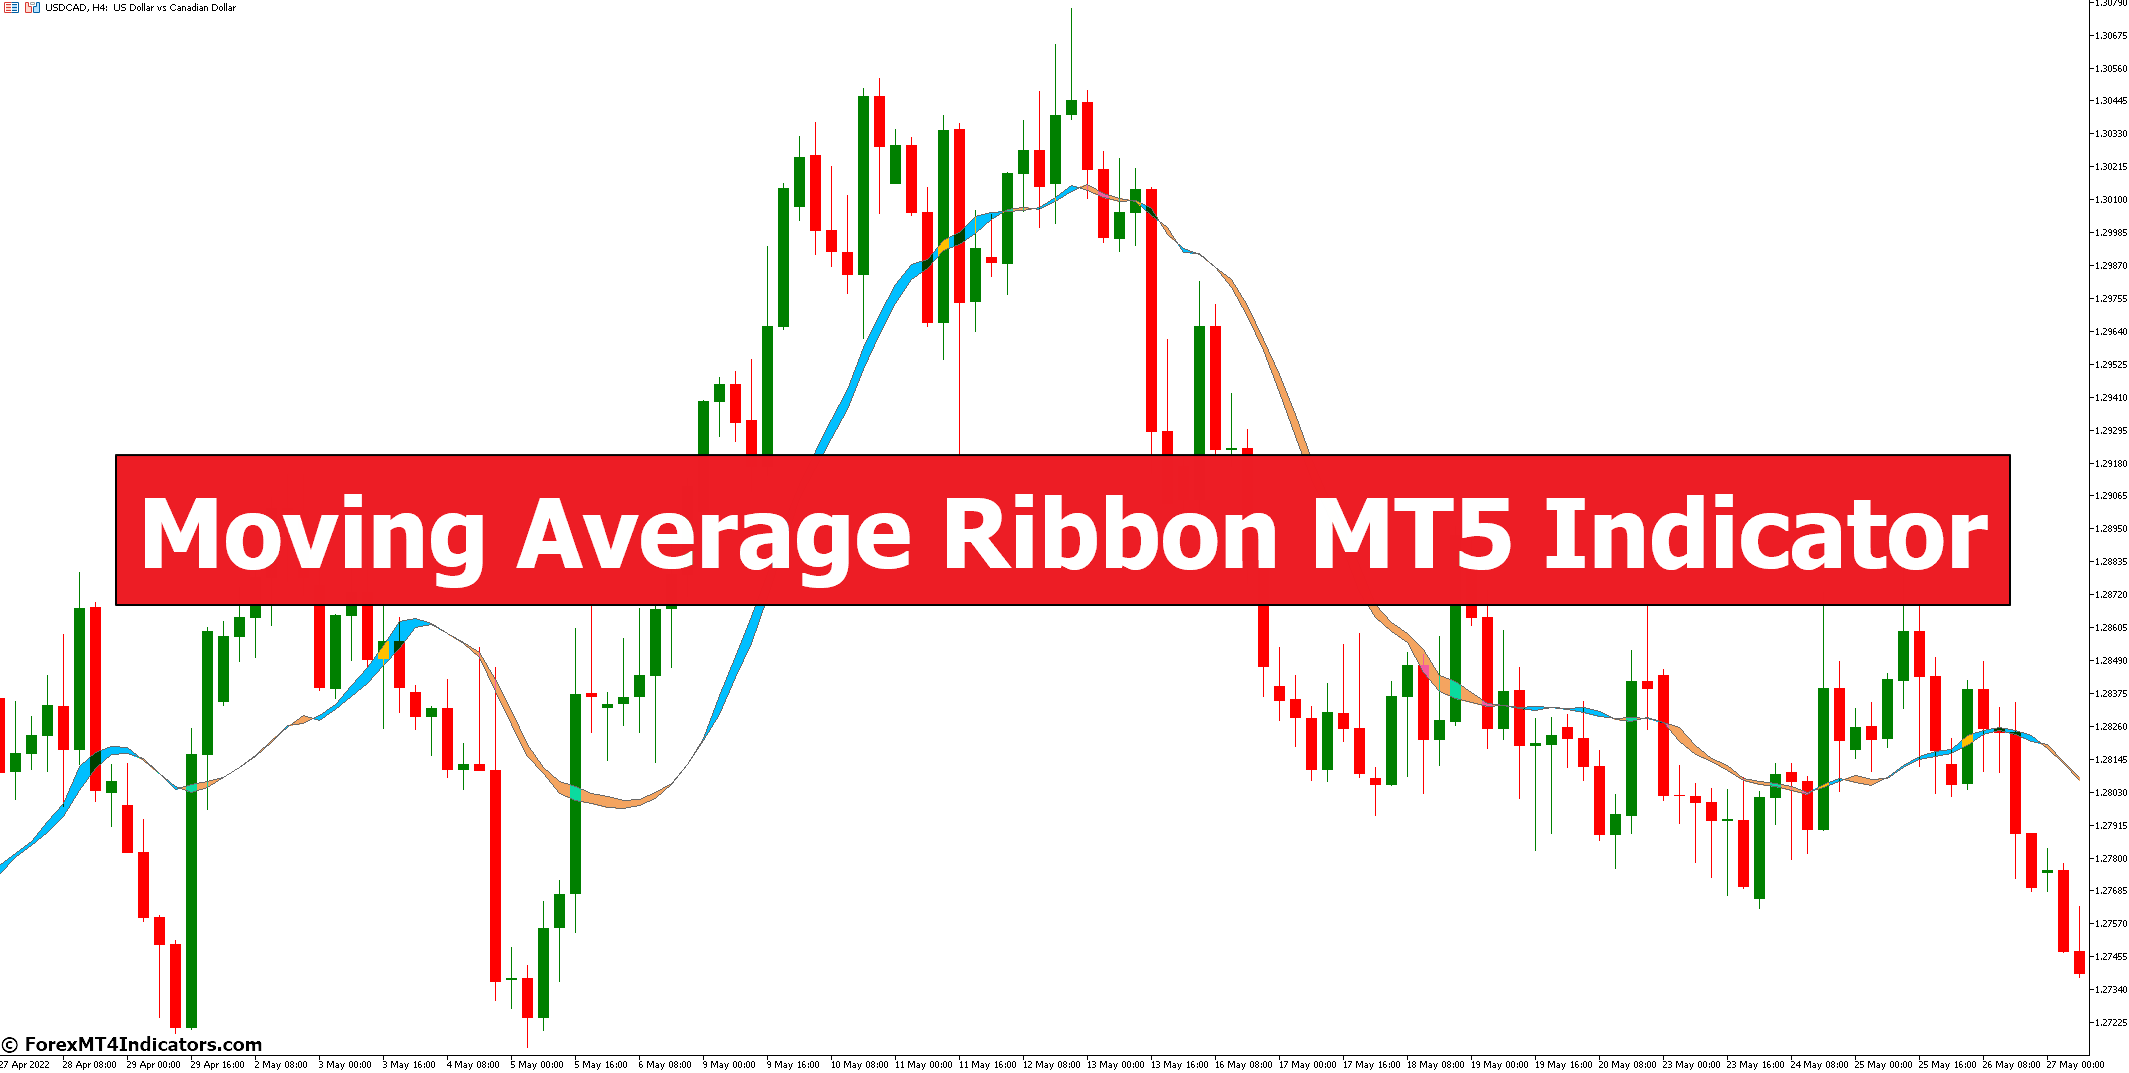 Moving Average Ribbon MT5 Indicator